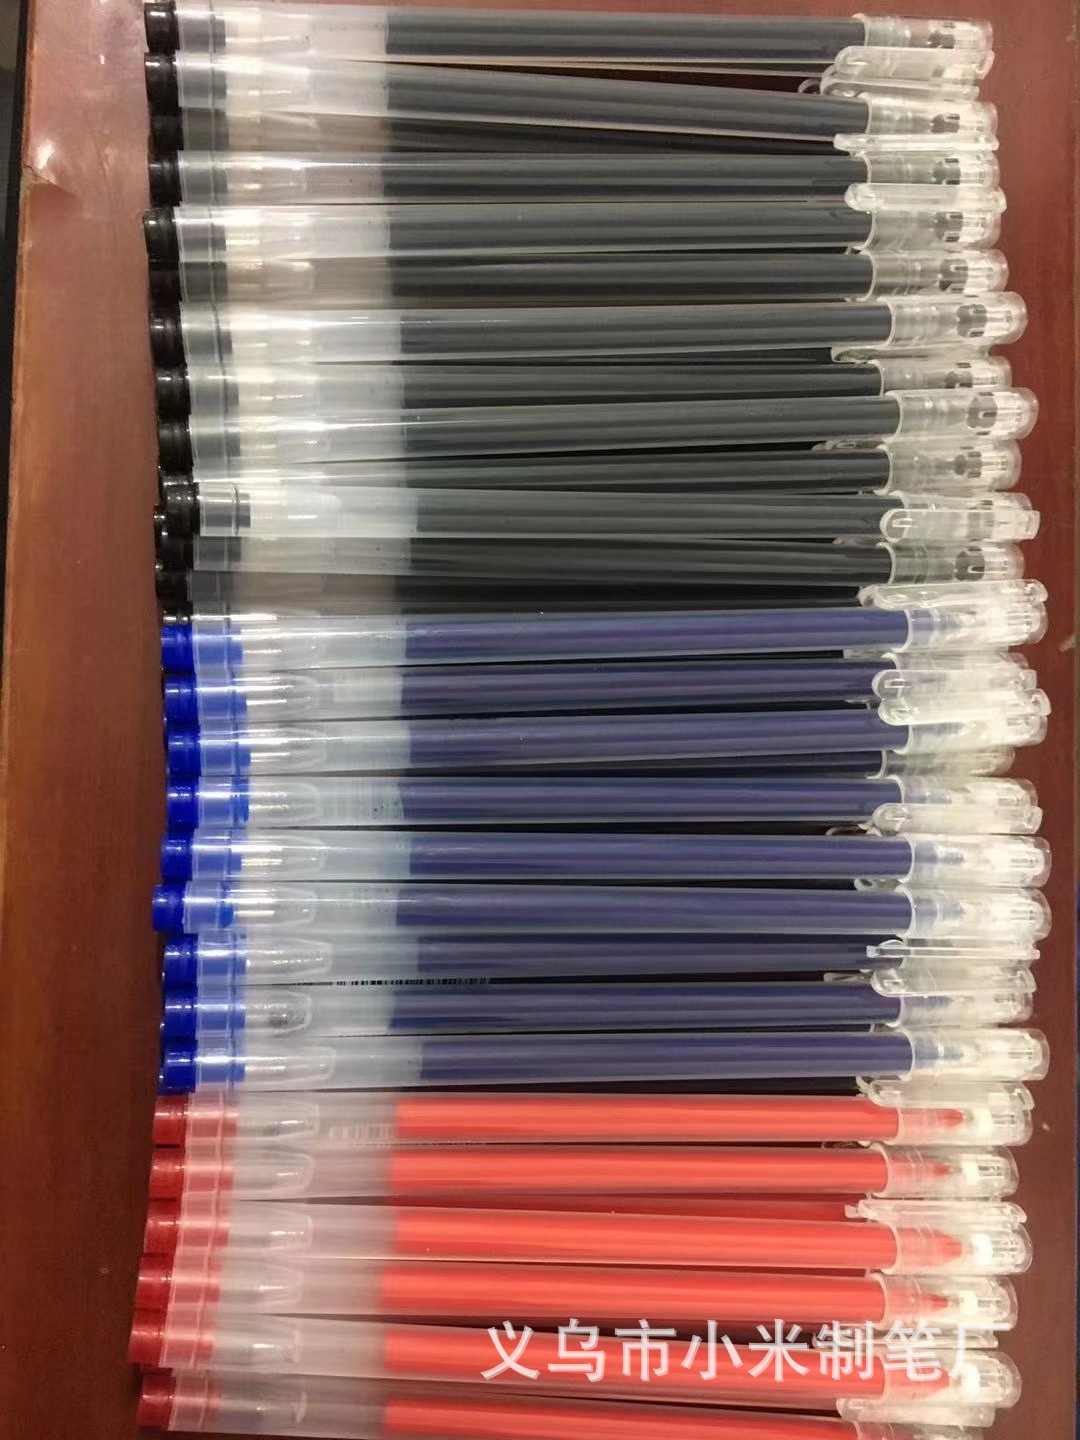 大容量巨能写水笔0.5mm全针管学生用笔办公签字笔黑蓝红中性笔详情图5